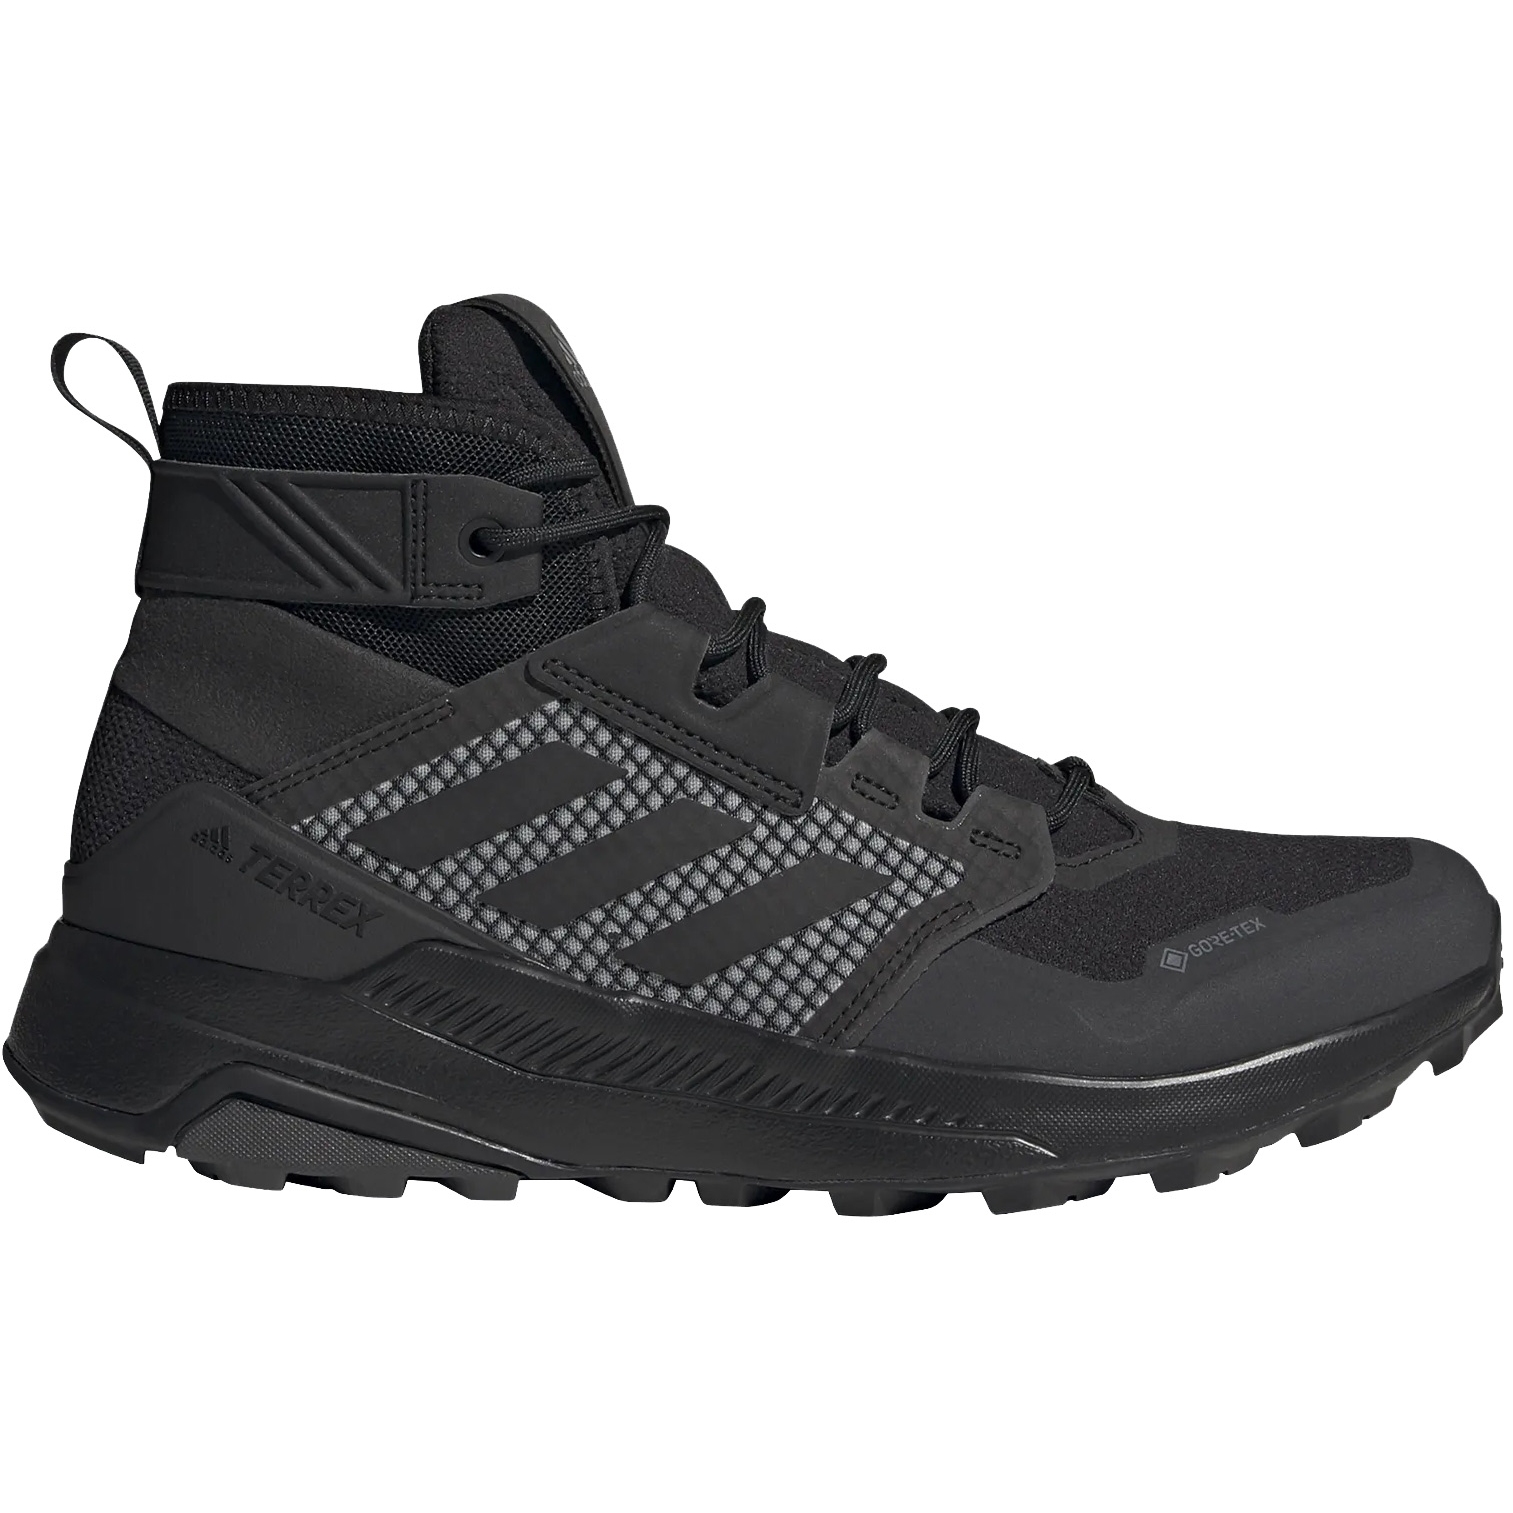 Produktbild von adidas Männer TERREX Trailmaker Mid GORE-TEX Wanderschuhe - core black/core black/dgh solid grey FY2229